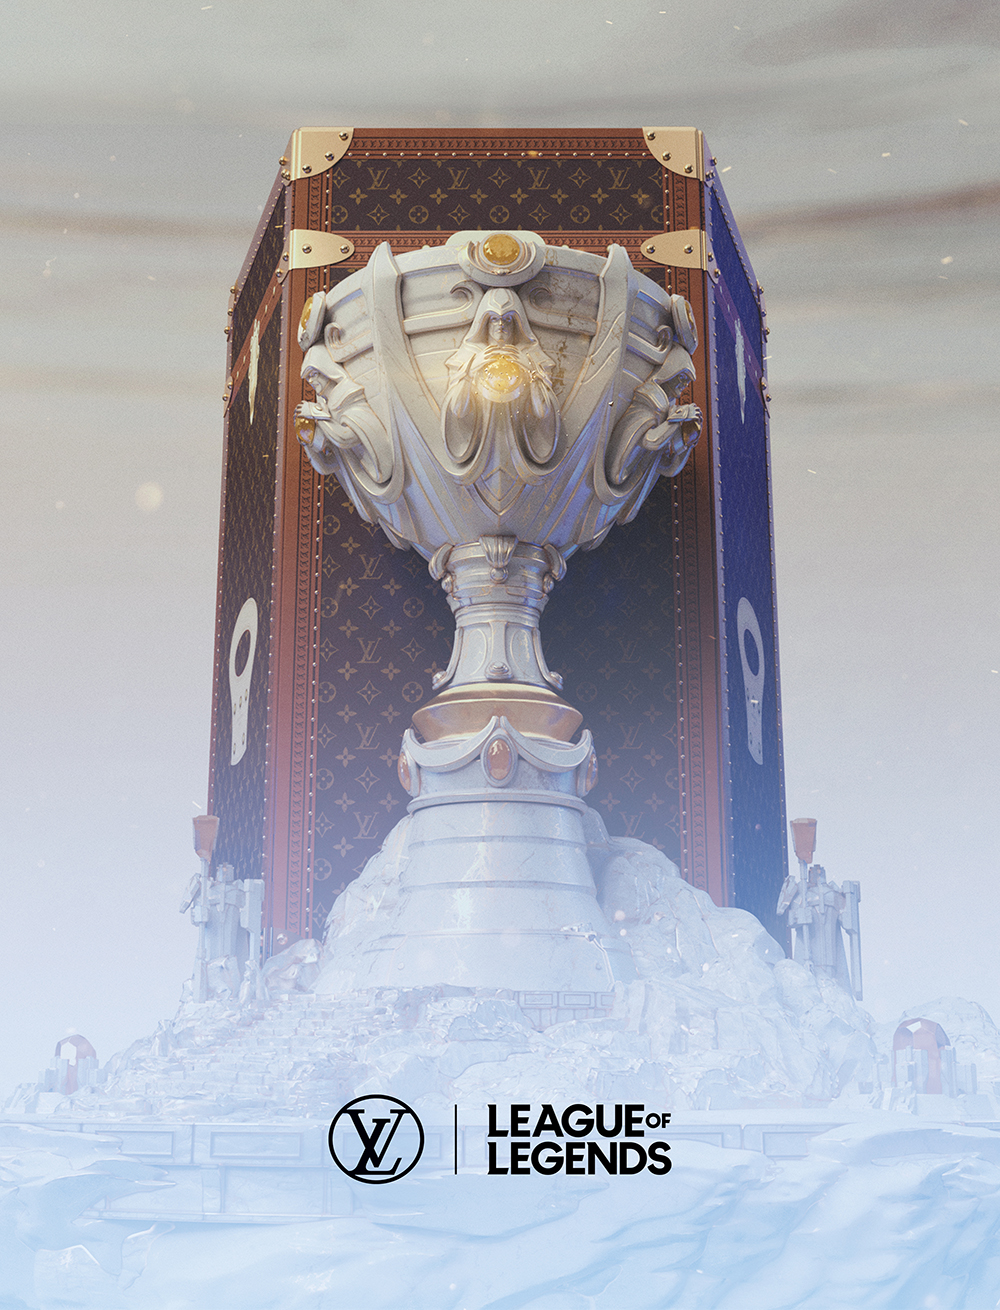 Louis Vuitton Launches Exclusive League Of Legends Capsule